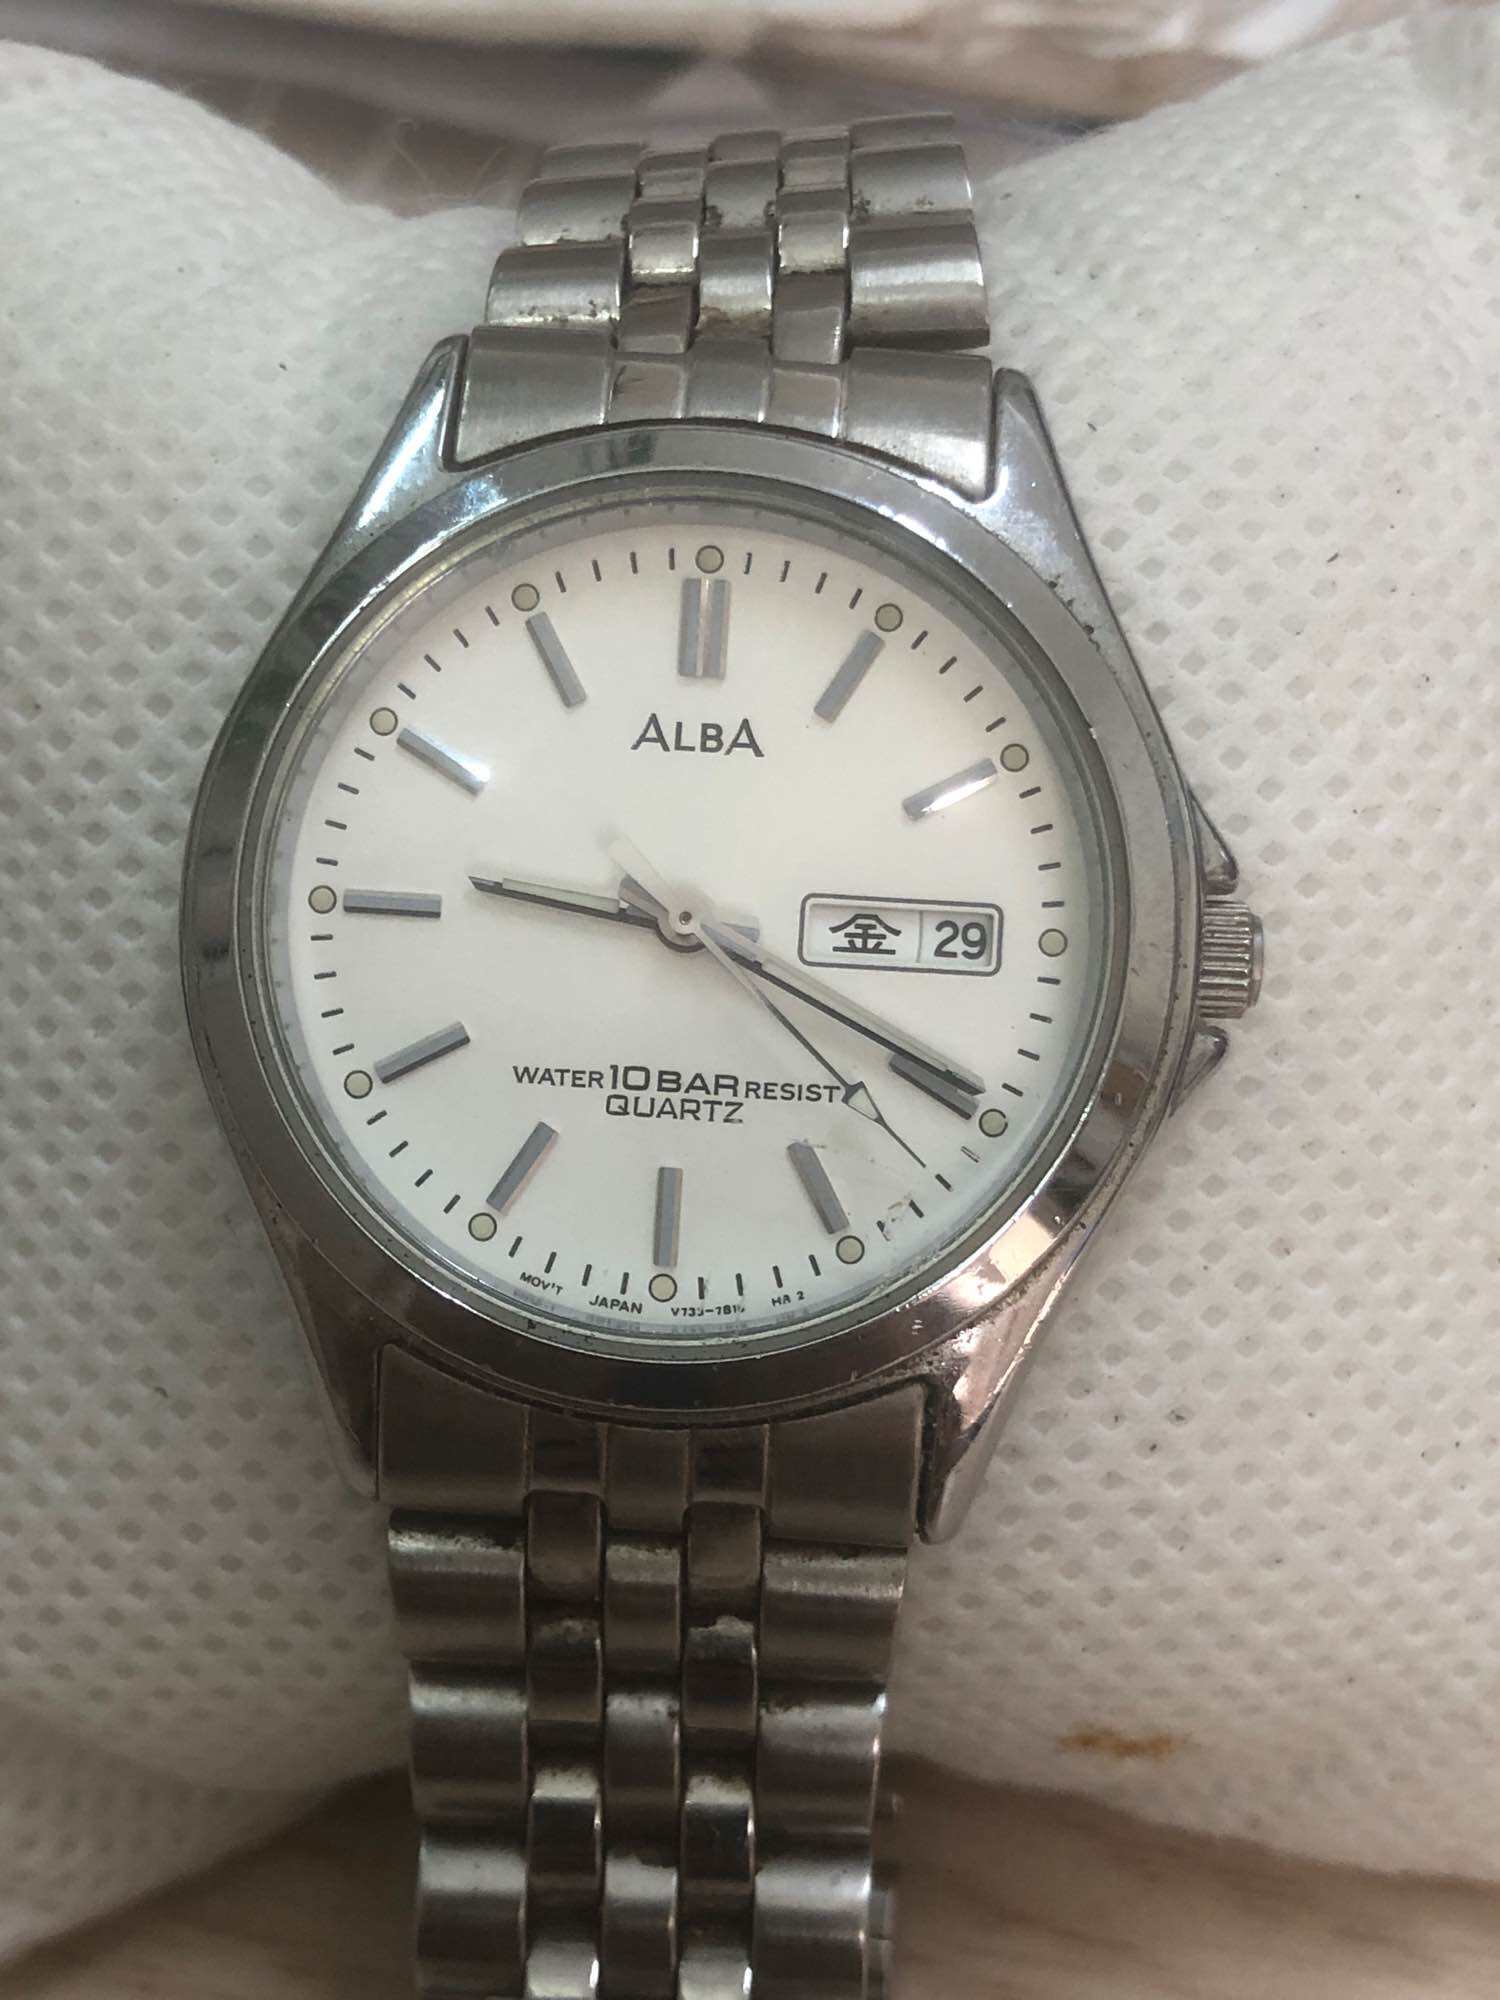 Đồng hồ nam hiệu alba, size mặt 34mm. Nam tay nhỏ đeo